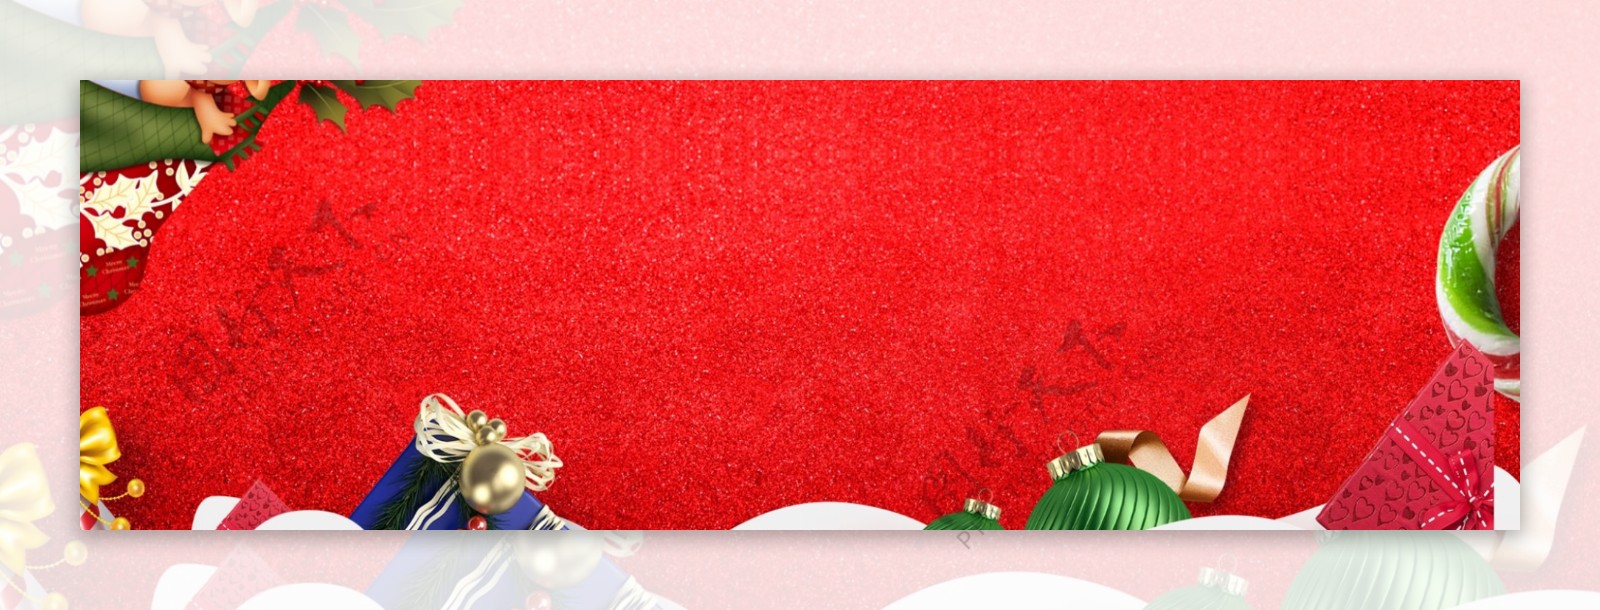 铃铛丝带平安夜圣诞节banner背景